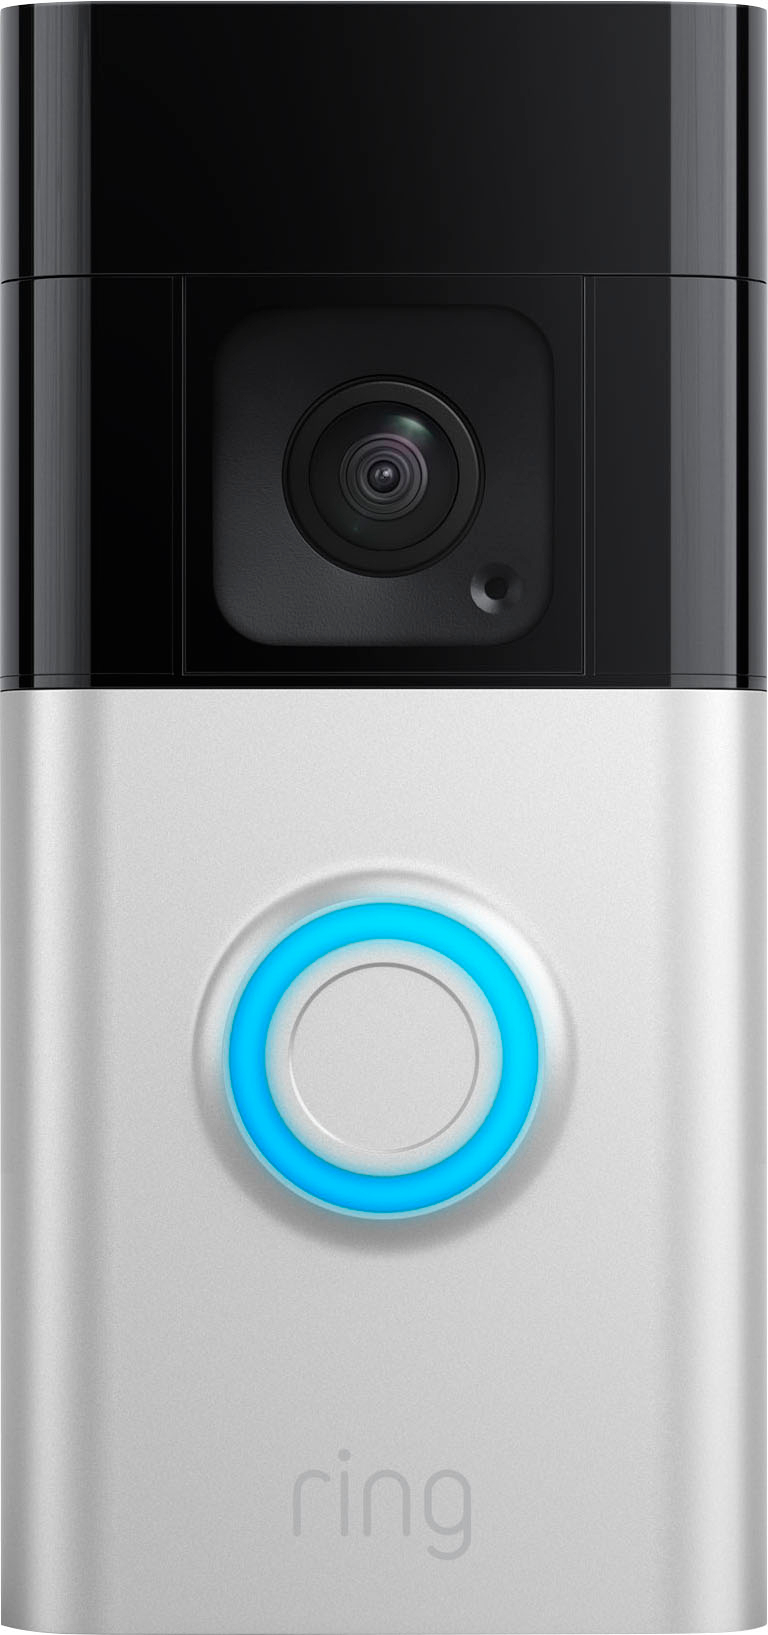 Customer Reviews: Ring Battery Doorbell Plus Smart Wifi Video Doorbell ...